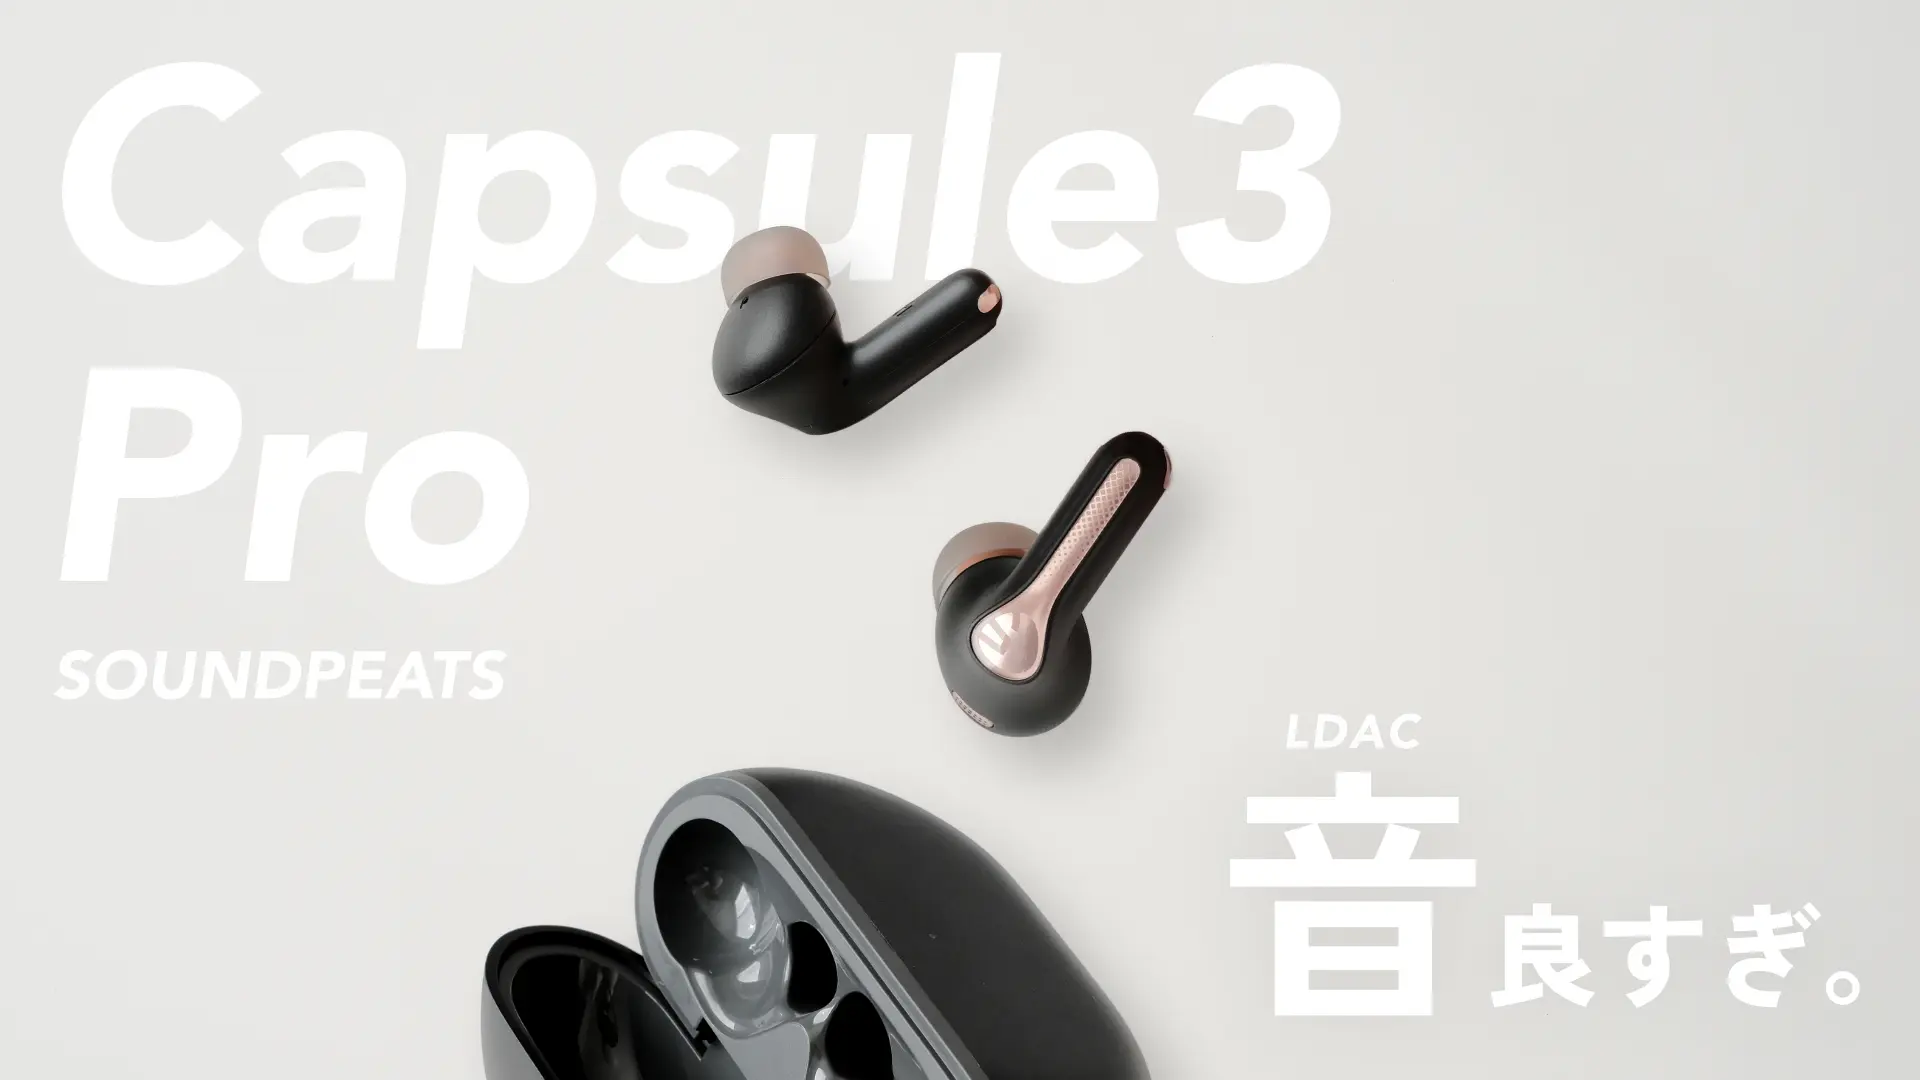 【色: ホワイト】SOUNDPEATS Capsule3 Pro ワイヤレスイヤ